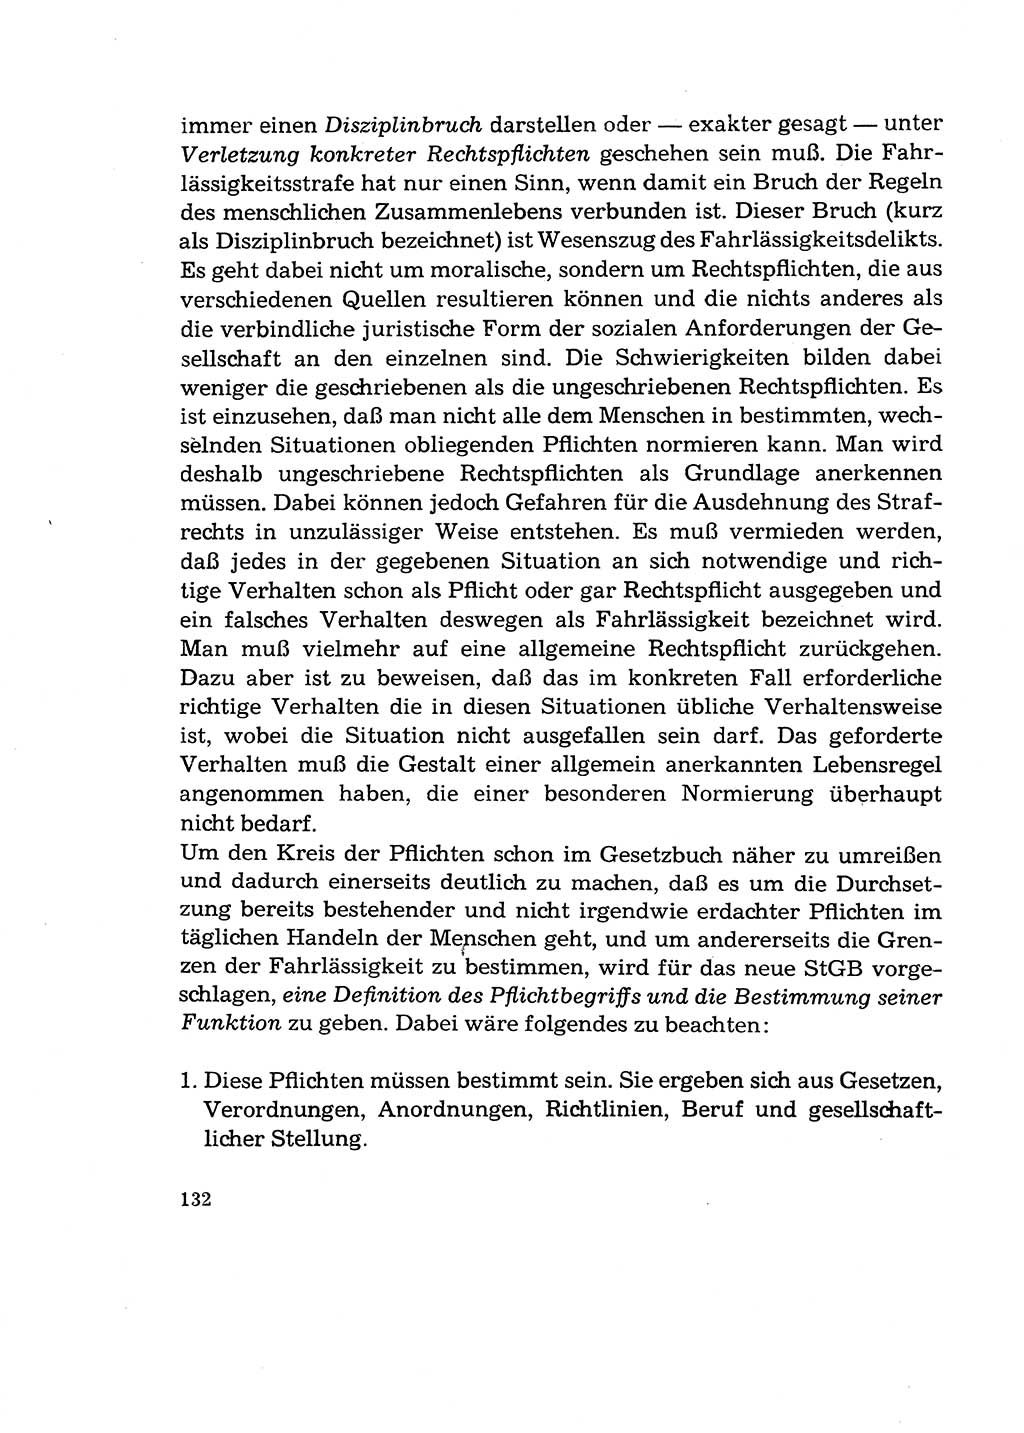 Verantwortung und Schuld im neuen Strafgesetzbuch (StGB) [Deutsche Demokratische Republik (DDR)] 1964, Seite 132 (Verantw. Sch. StGB DDR 1964, S. 132)